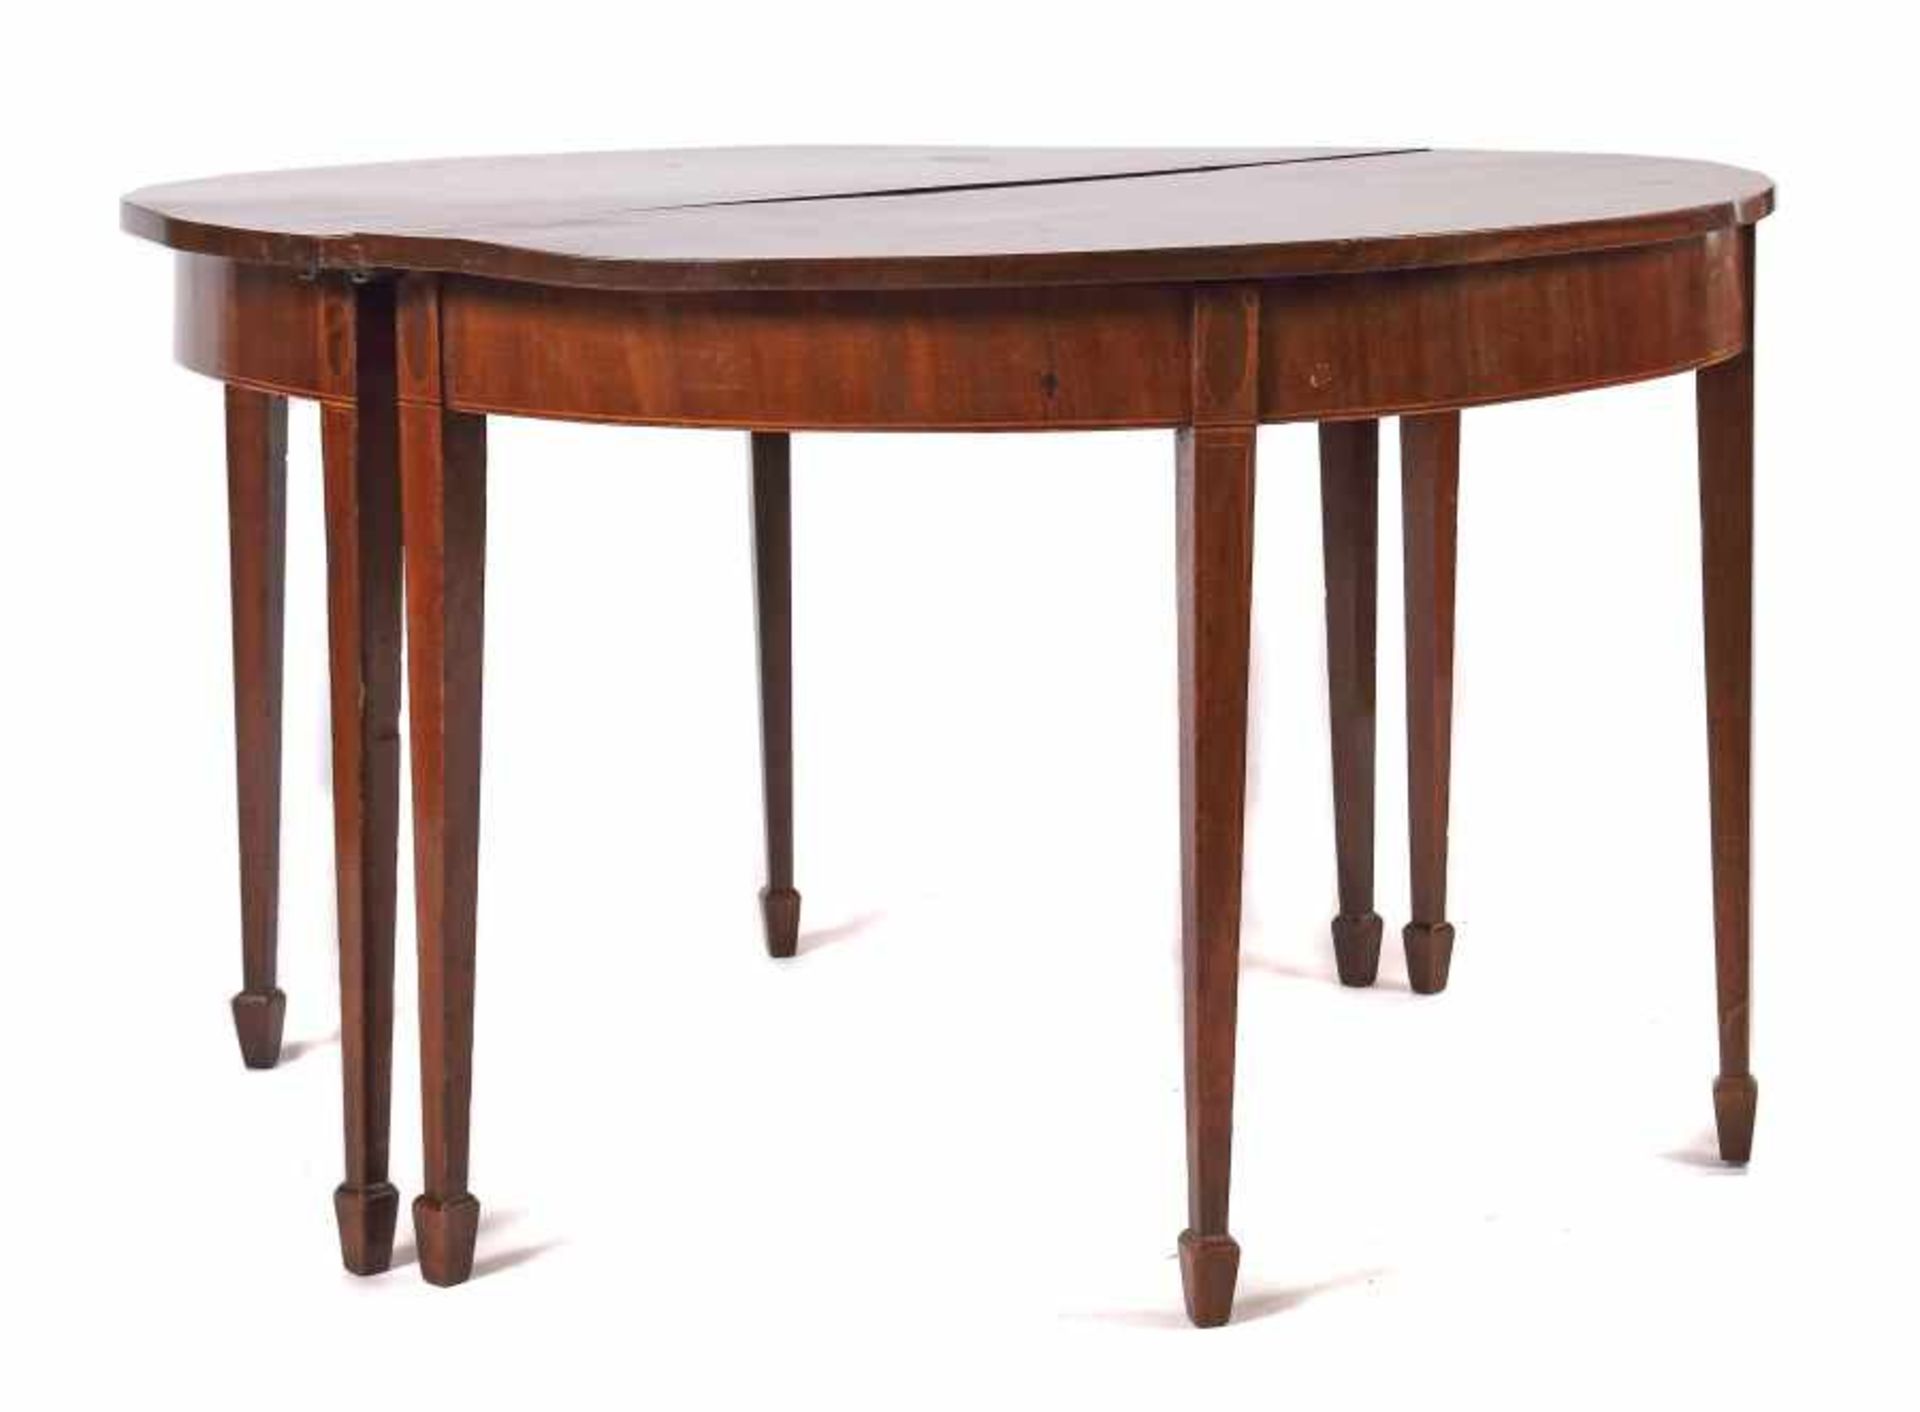 Teilbarer runder Tisch wohl England, 19. Jh., Mahagoni, das Möbel ist zu 2 demi lune-Tischen mit